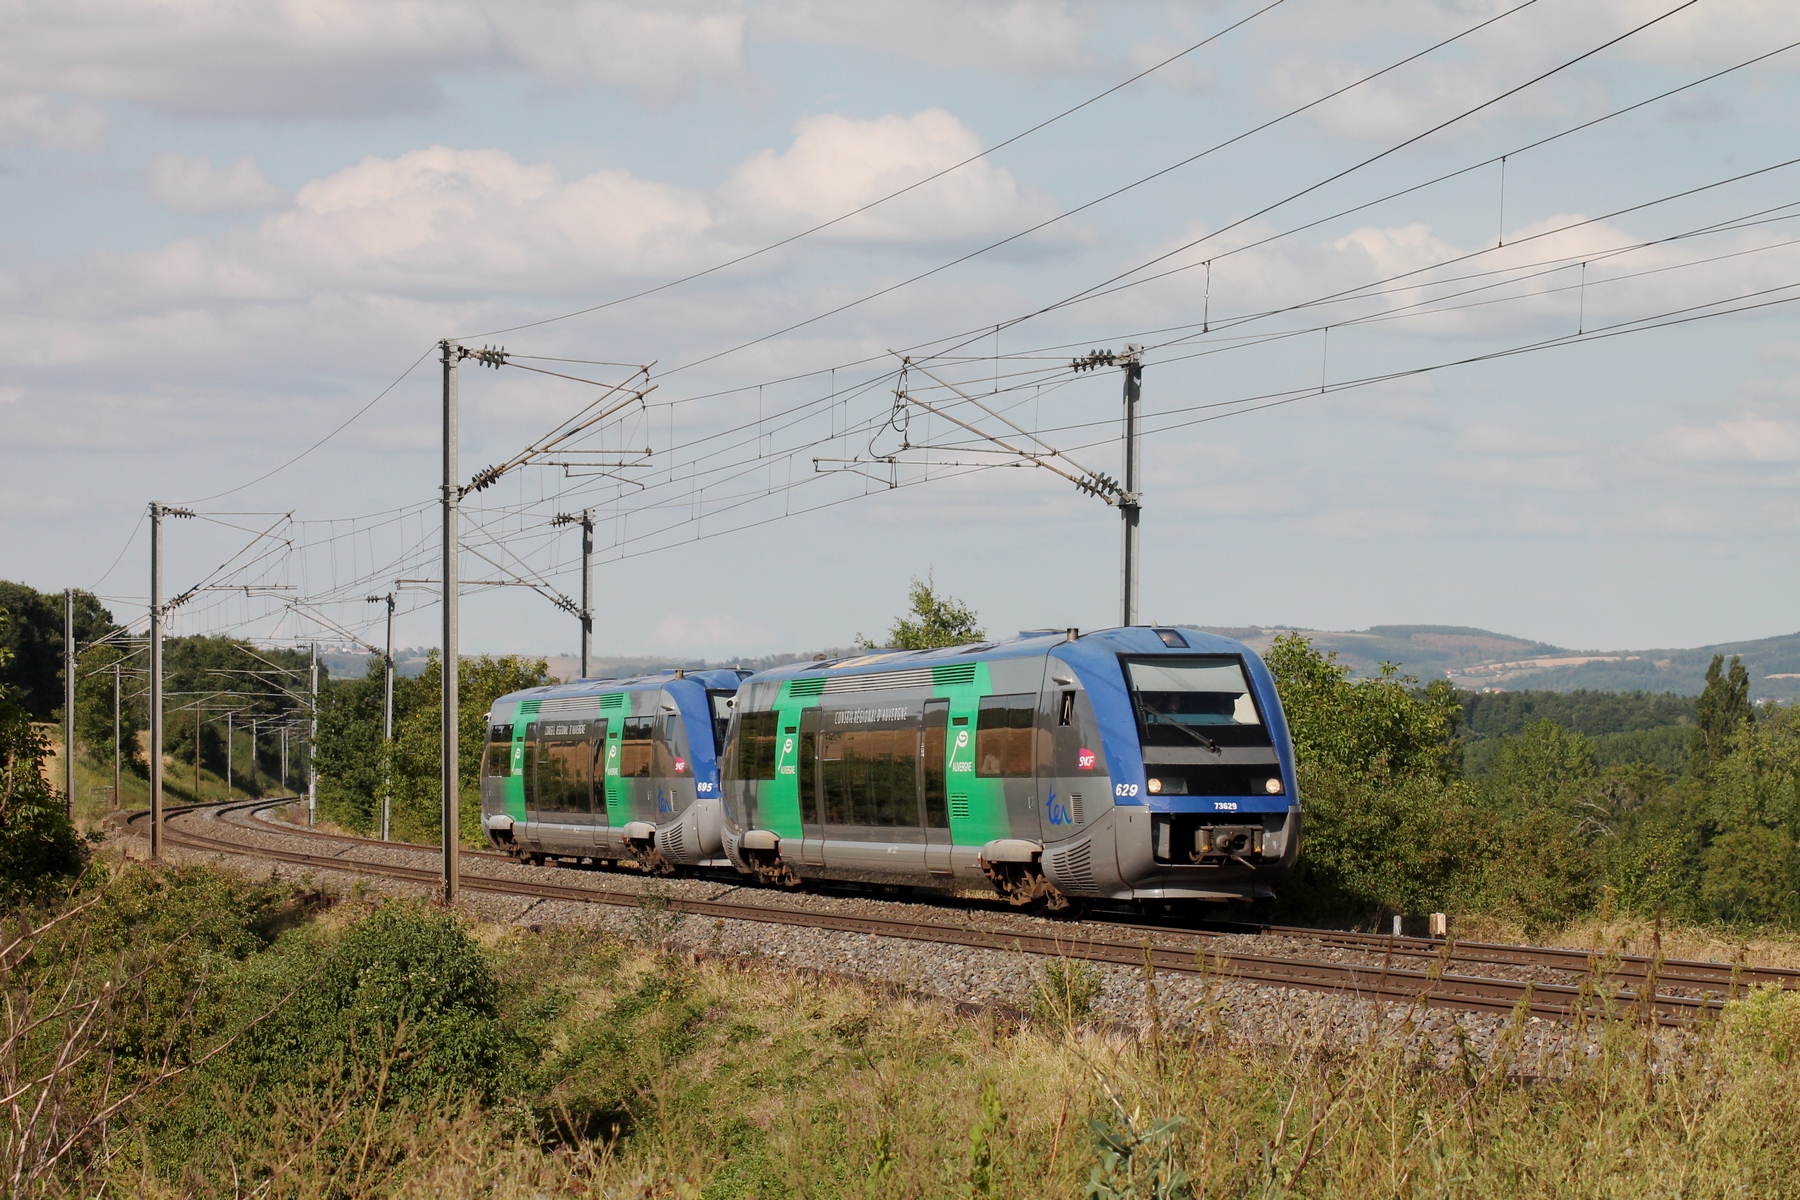 En cette fin d'après-midi où le mercure est monté très haut, le X 73629 accompagné du X 73695 appartenant tous 2 à TER Auvergne, descendent direction Clermont-Ferrand.